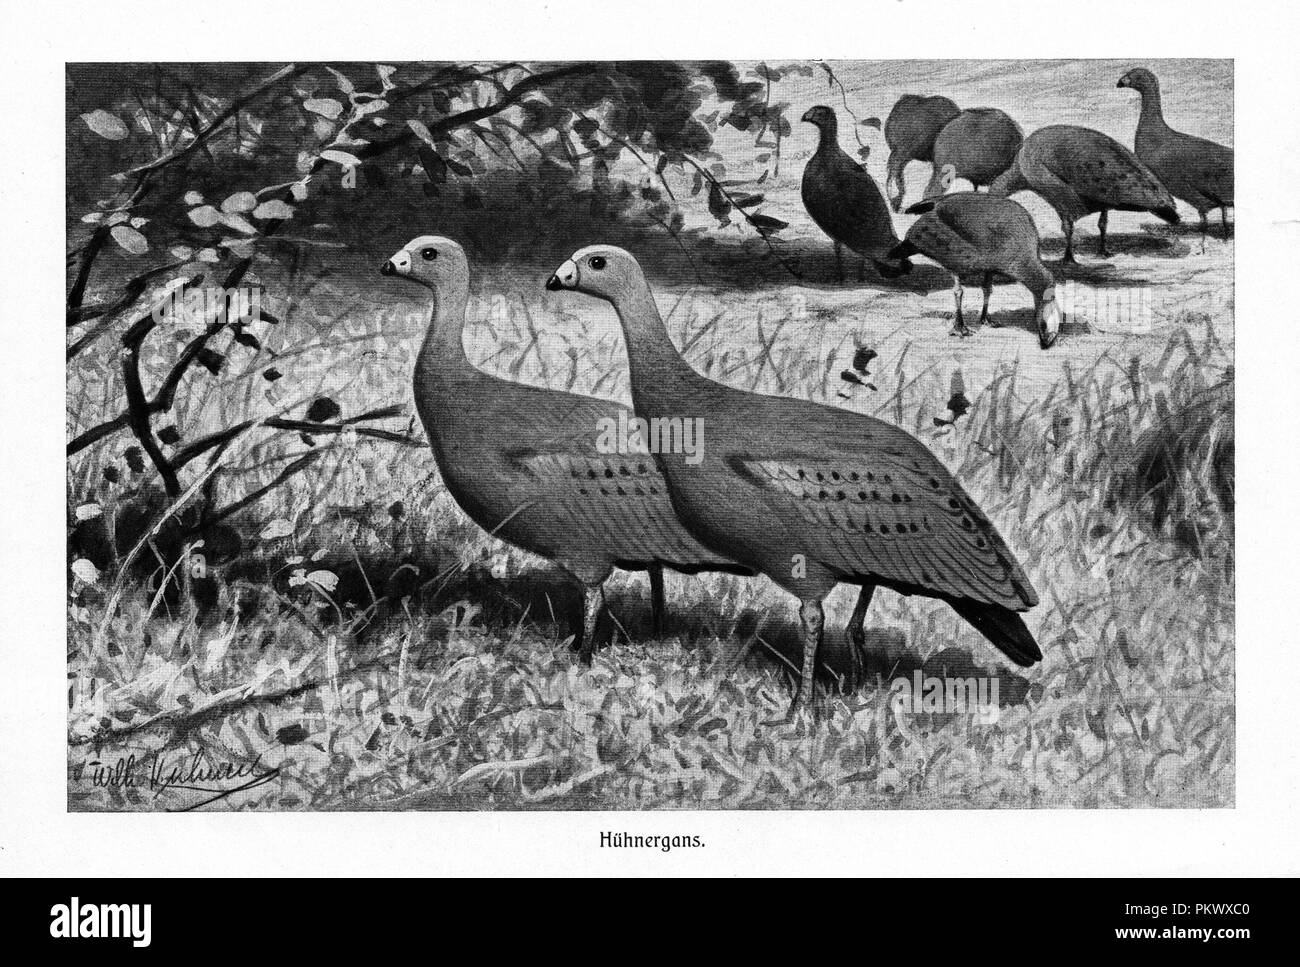 Cape sterile Oche, antiche illustrazioni per libri, digitalizzato. Immagini contengono una serie di uccelli, originariamente illustrata per enciclopedie del tardo ottocento. Foto Stock